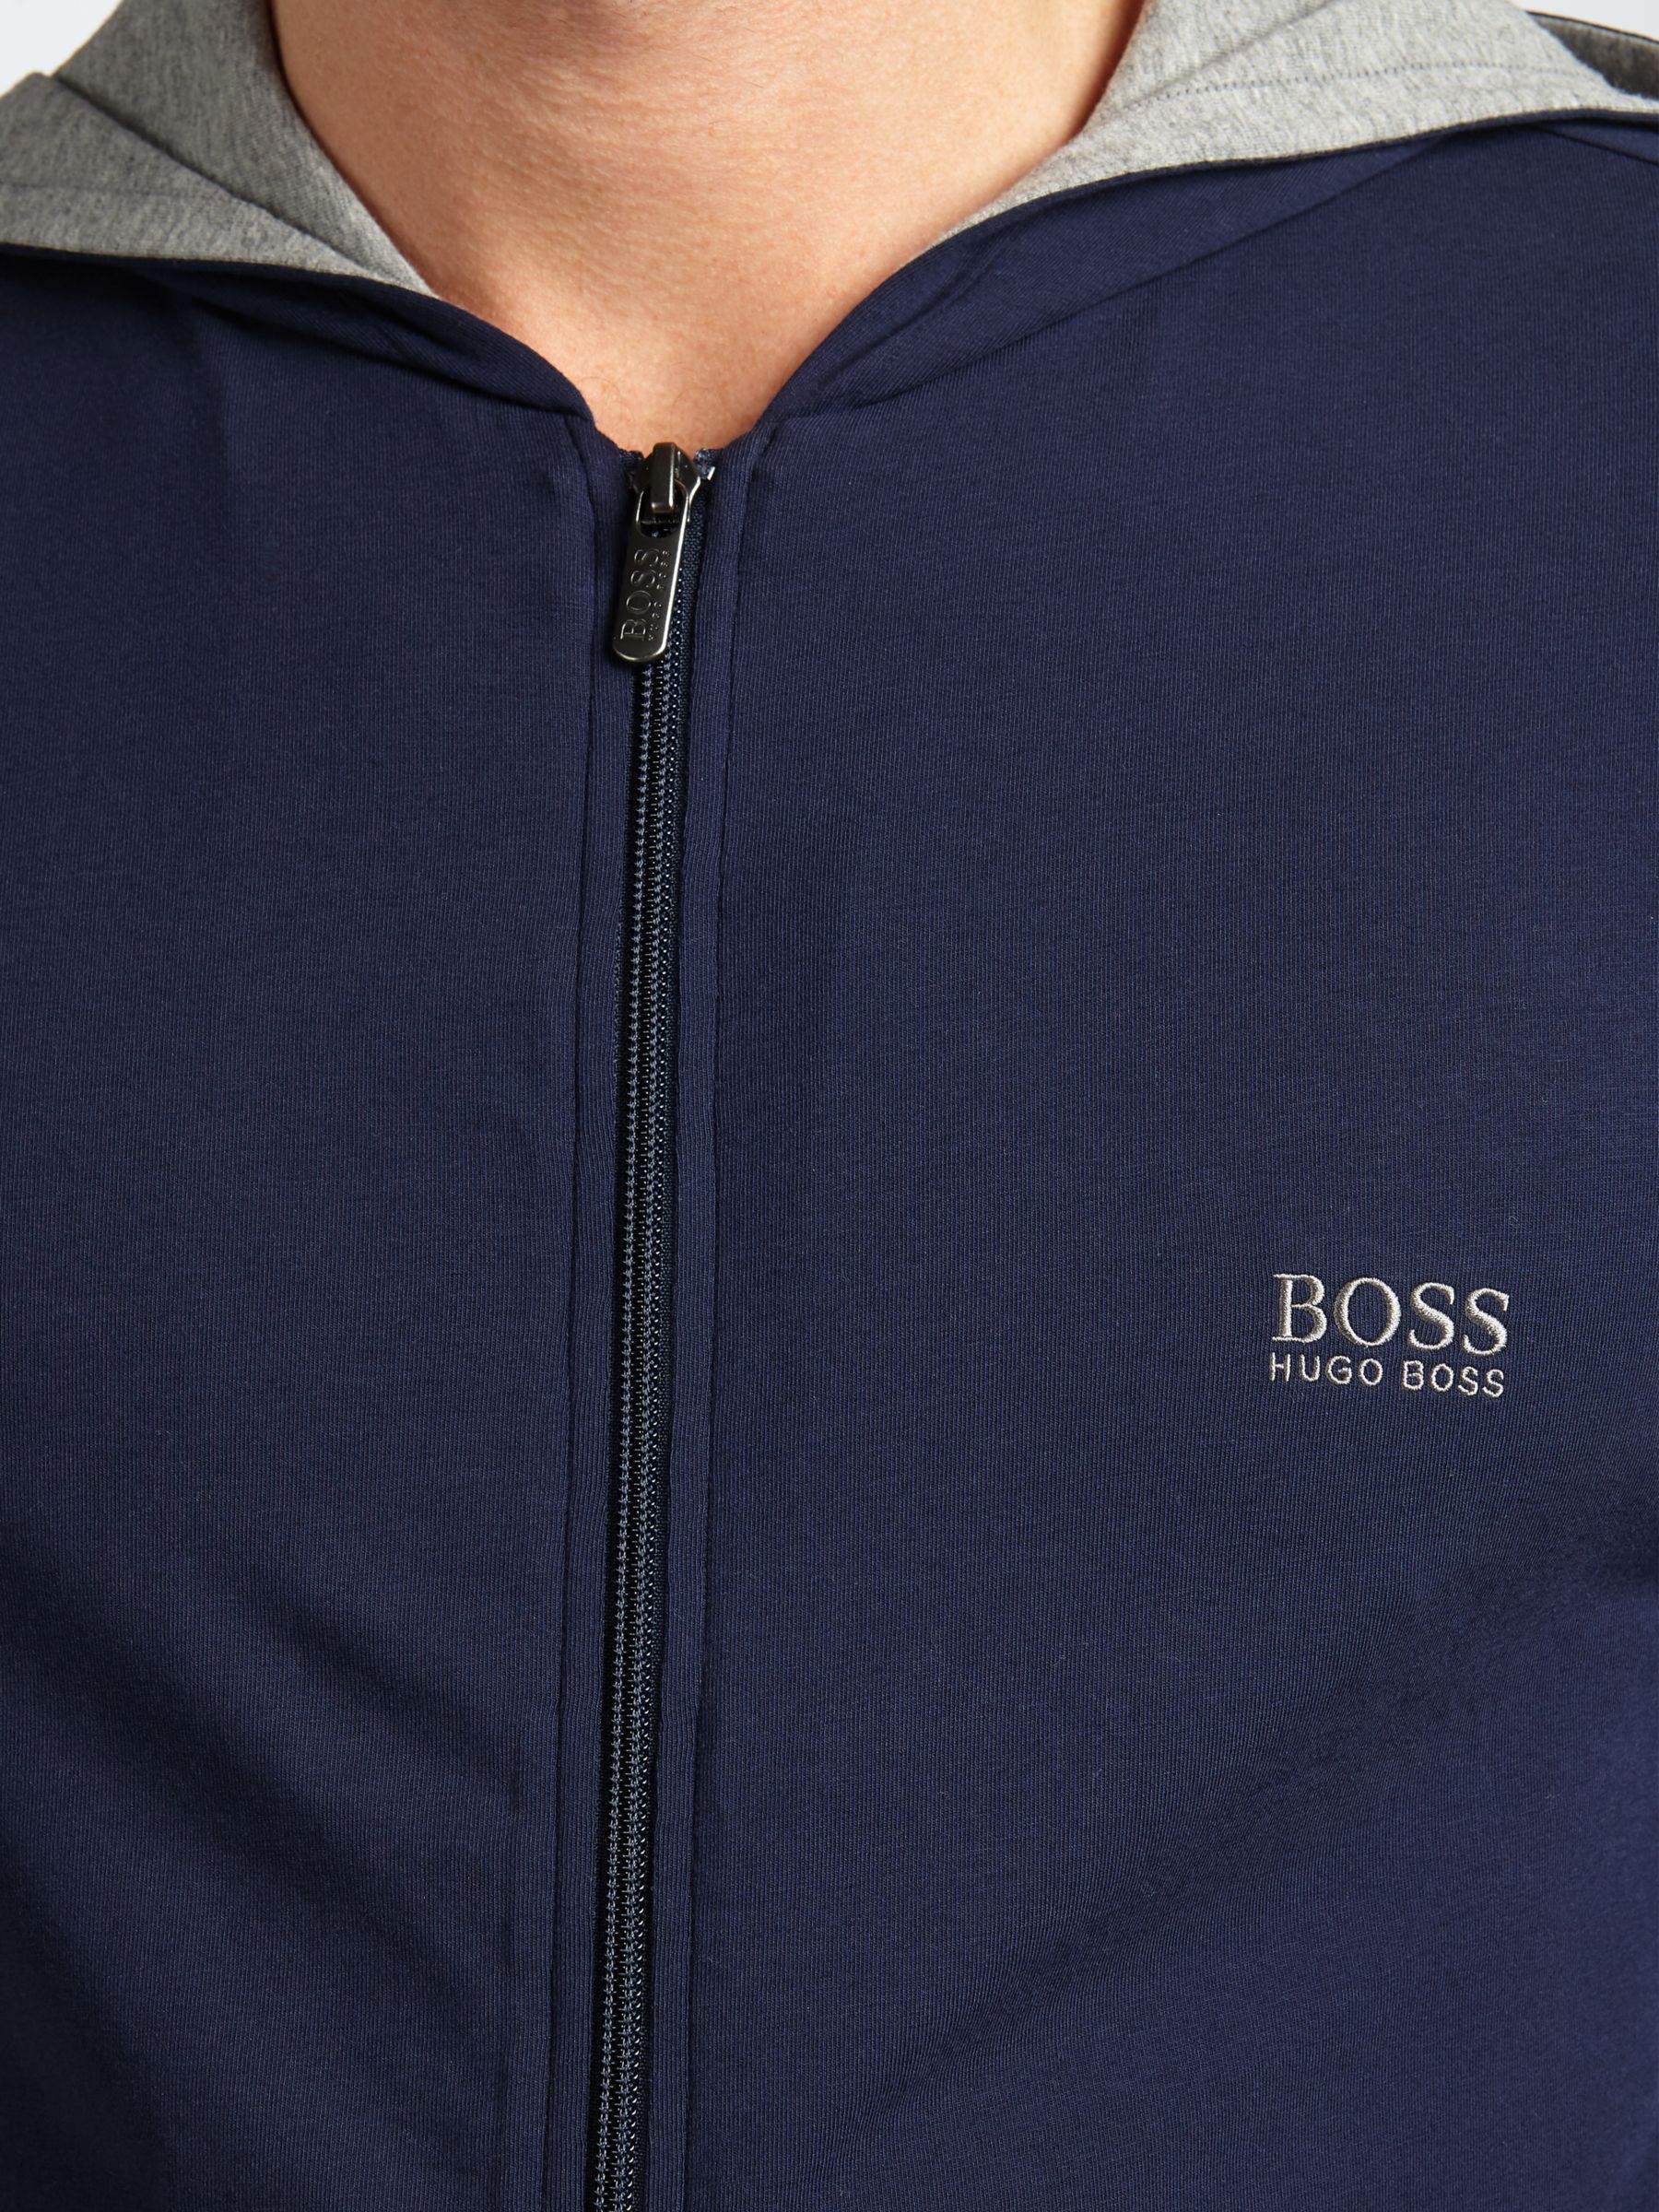 hugo boss loungewear hoodie